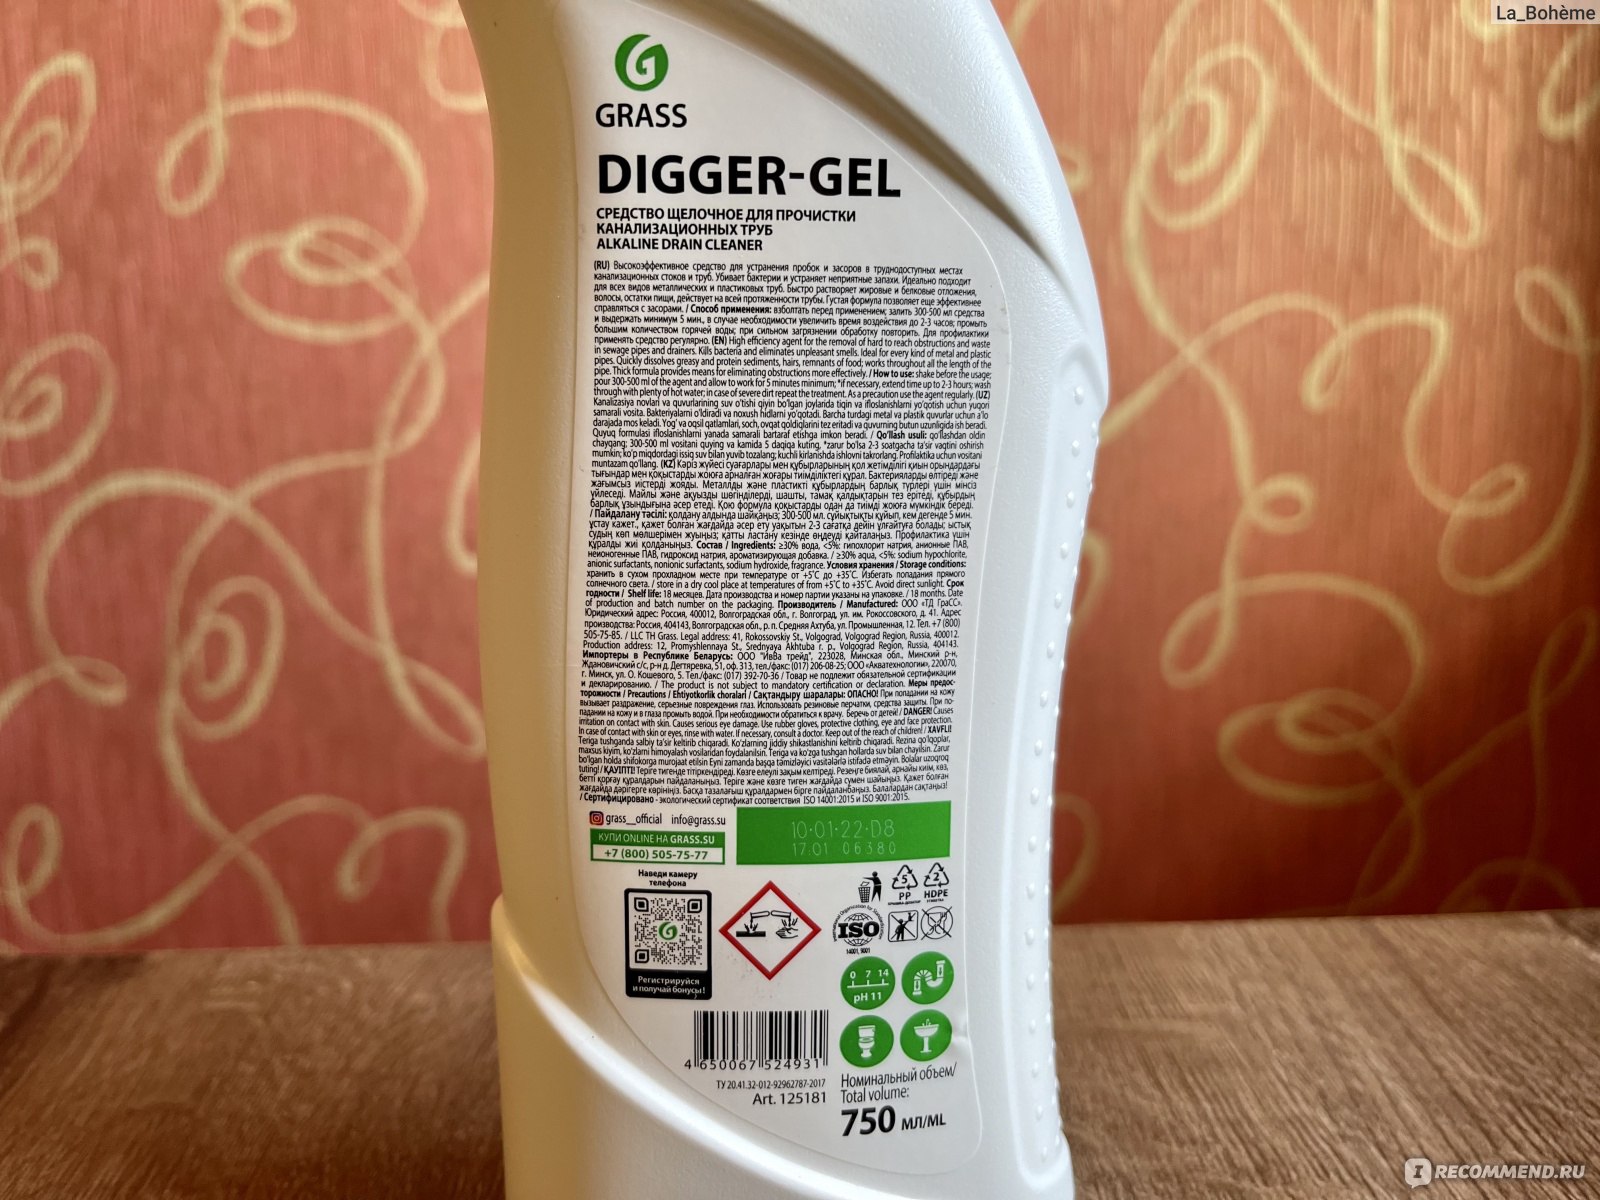 Digger gel для прочистки. Средство щелочное для прочистки канализационных труб "Digger-Gel". Диггер гель Грасс. Анти-засор grass Digger-Gel 0,75л. Диггер гель для прочистки труб.